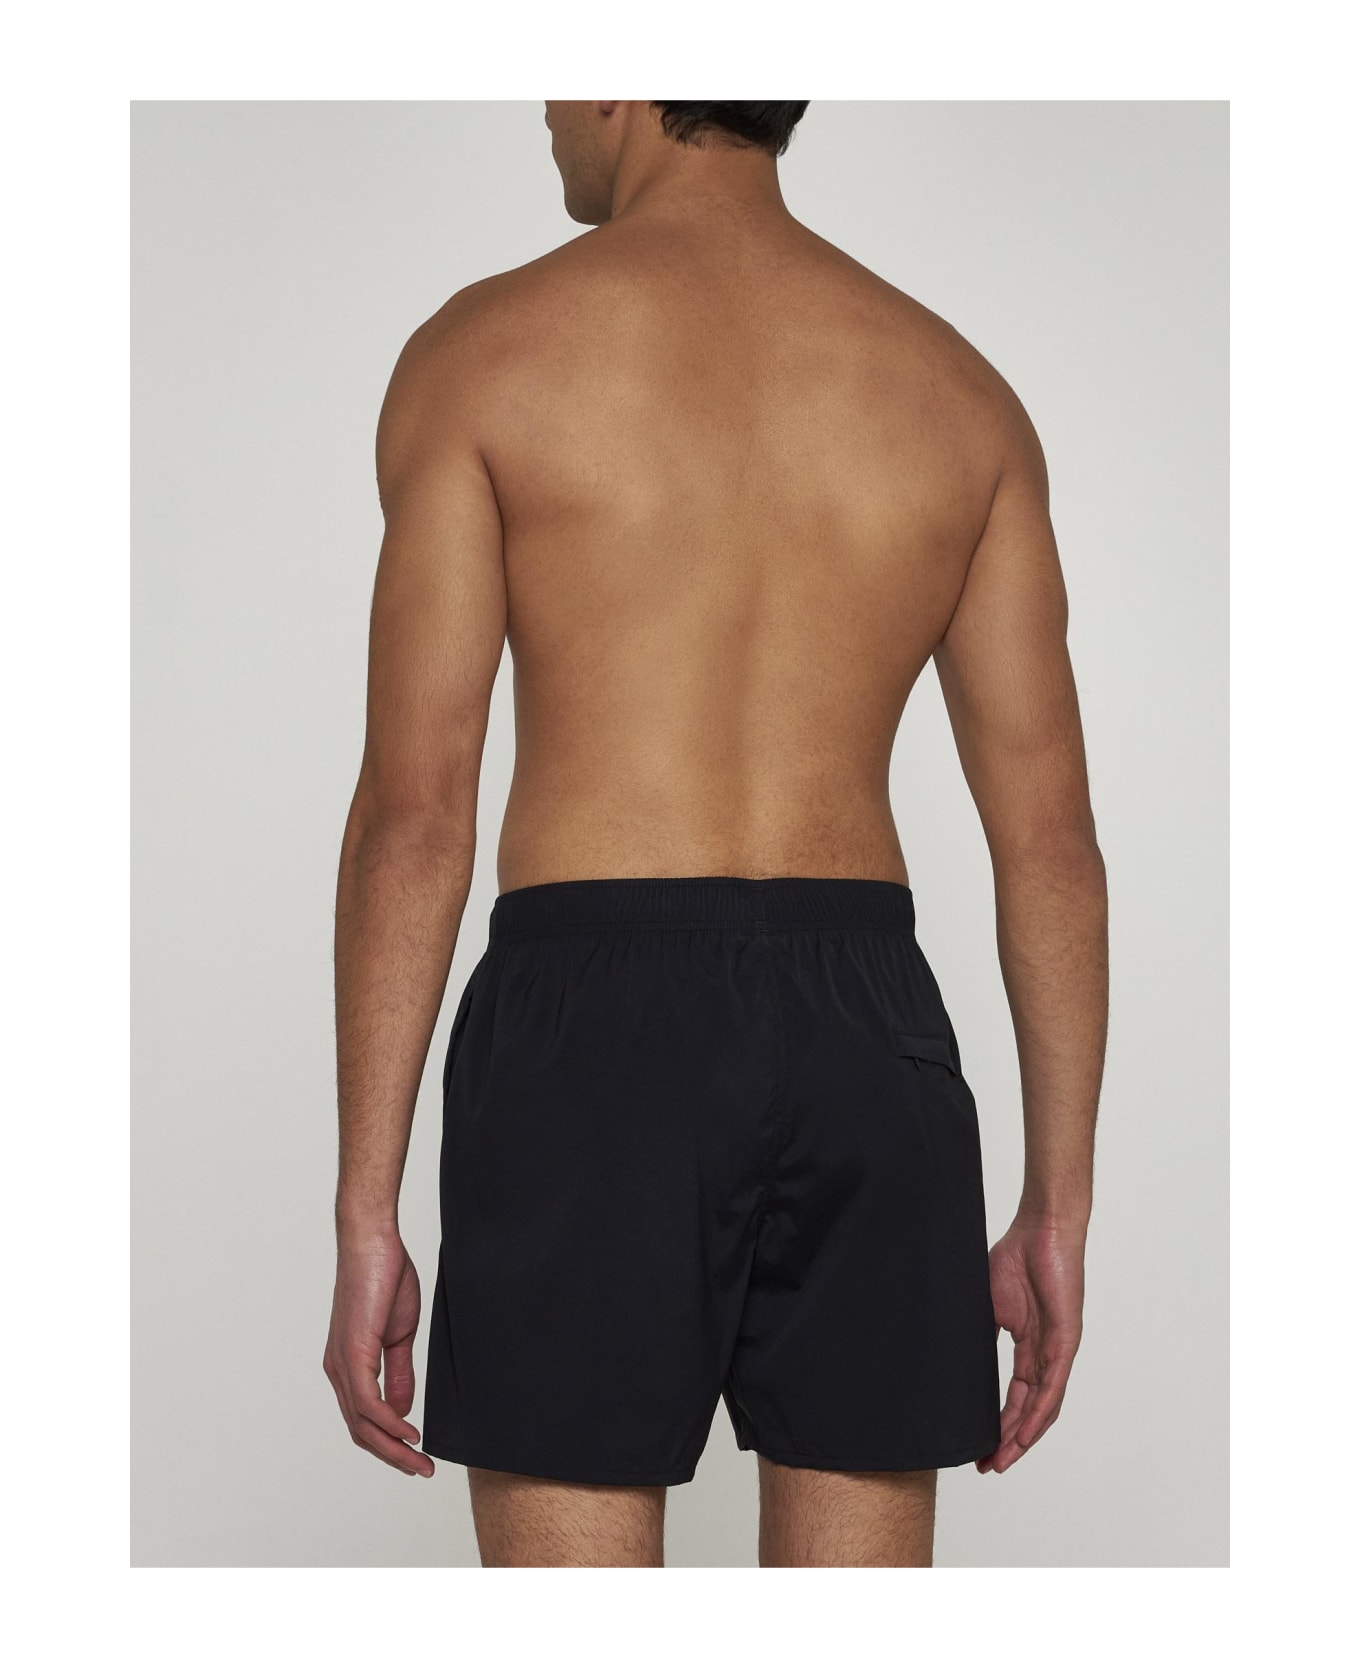 Jil Sander Logo Swim Shorts - Black